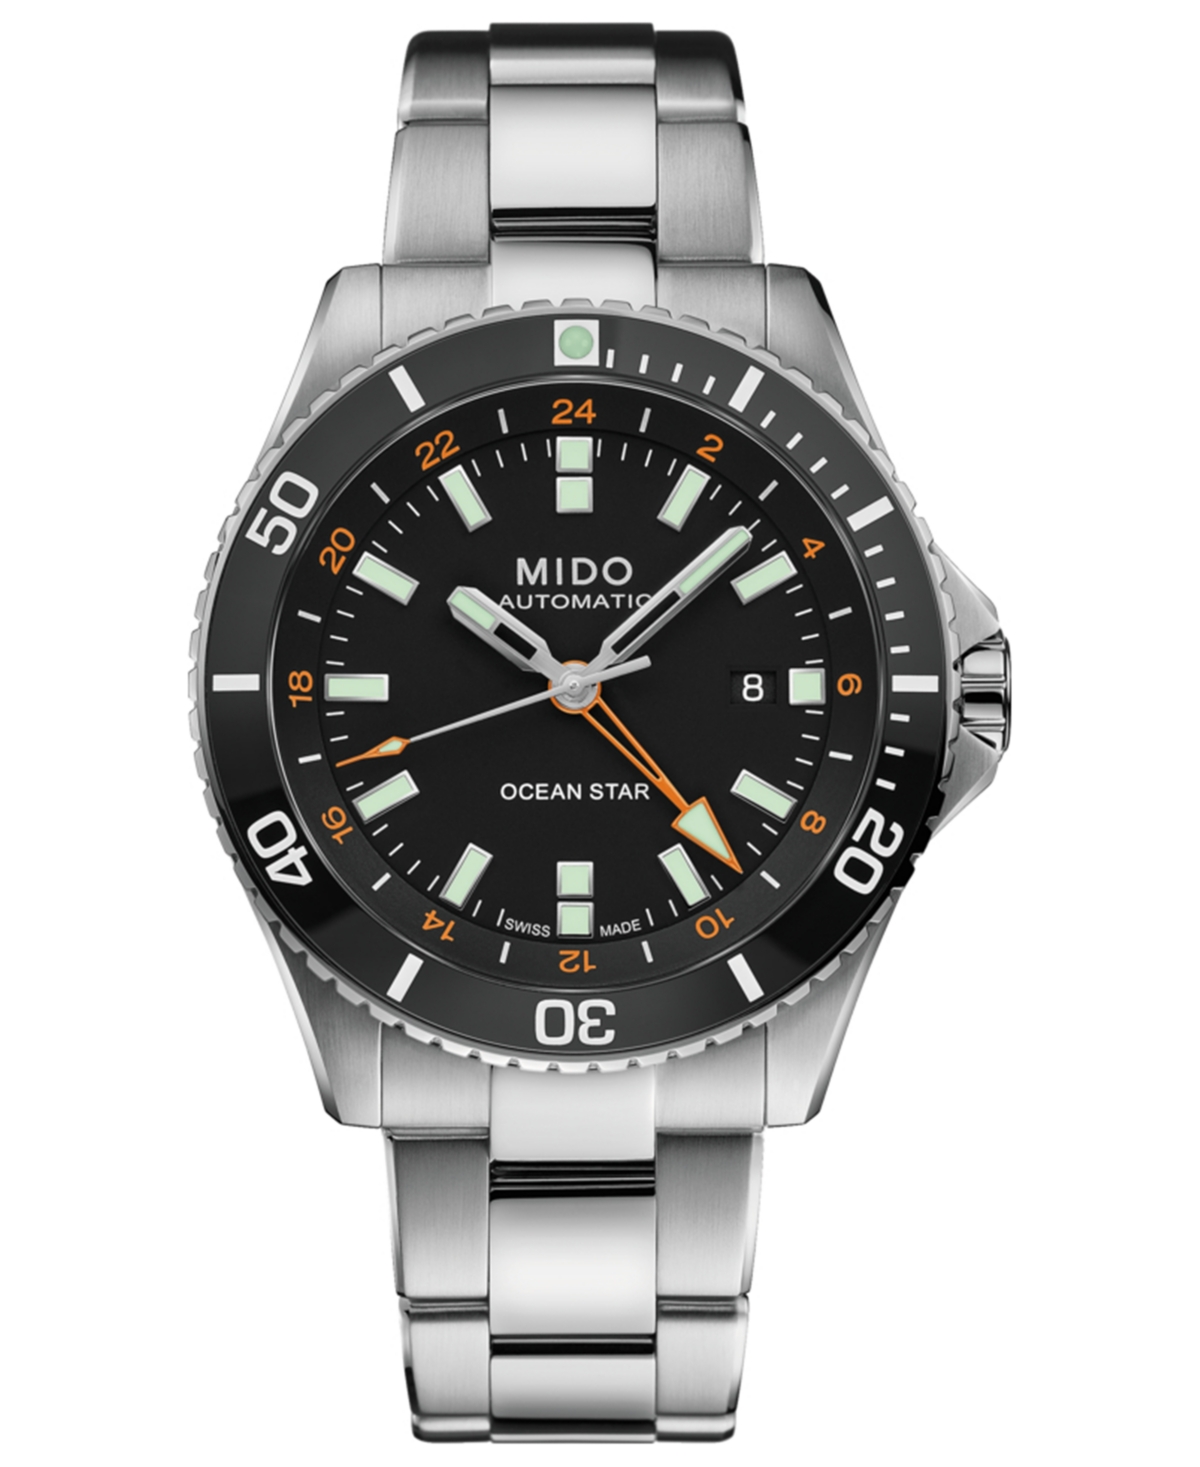 Mido Men's Swiss Automatic Ocean Star Gmt Stainless Steel Bracelet Watch 44mm